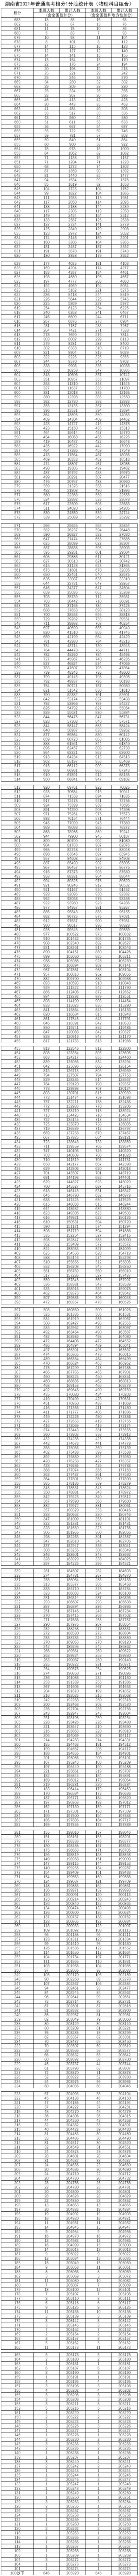 湖南省2021年普通高考档分1分段统计表（物理科目组合）